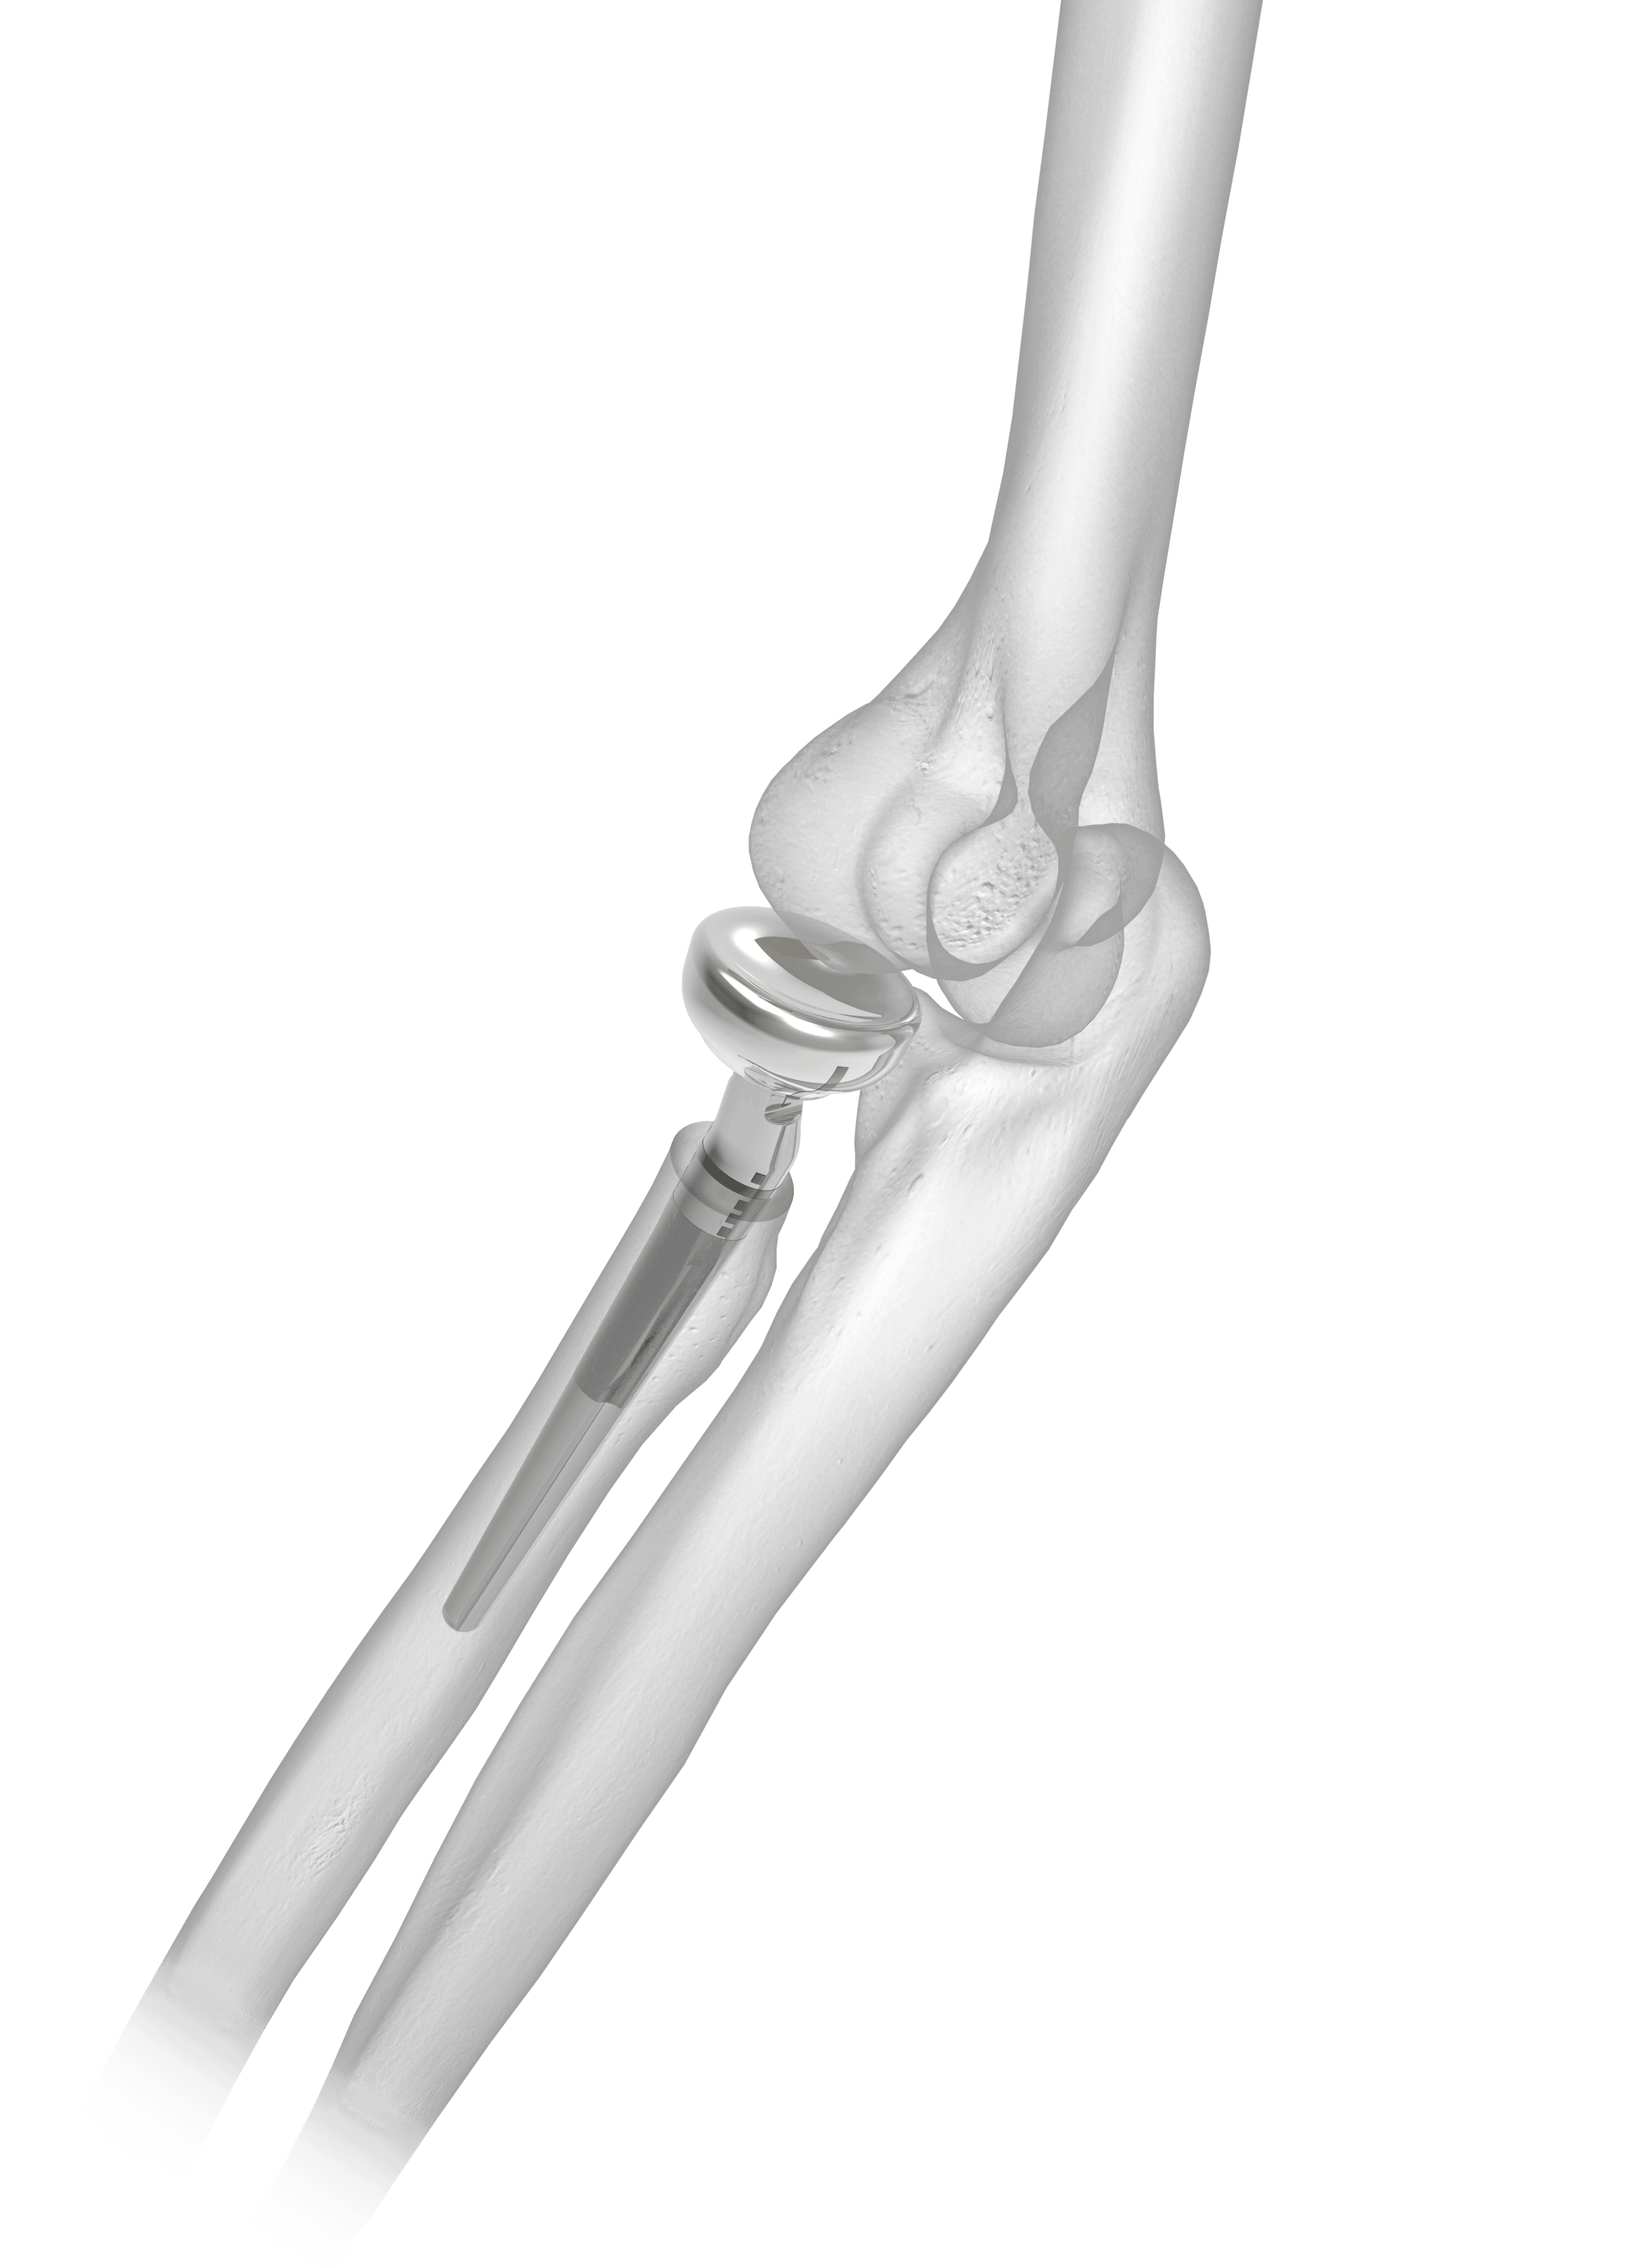 ARH Long Stem On Bone - With Laser Markings